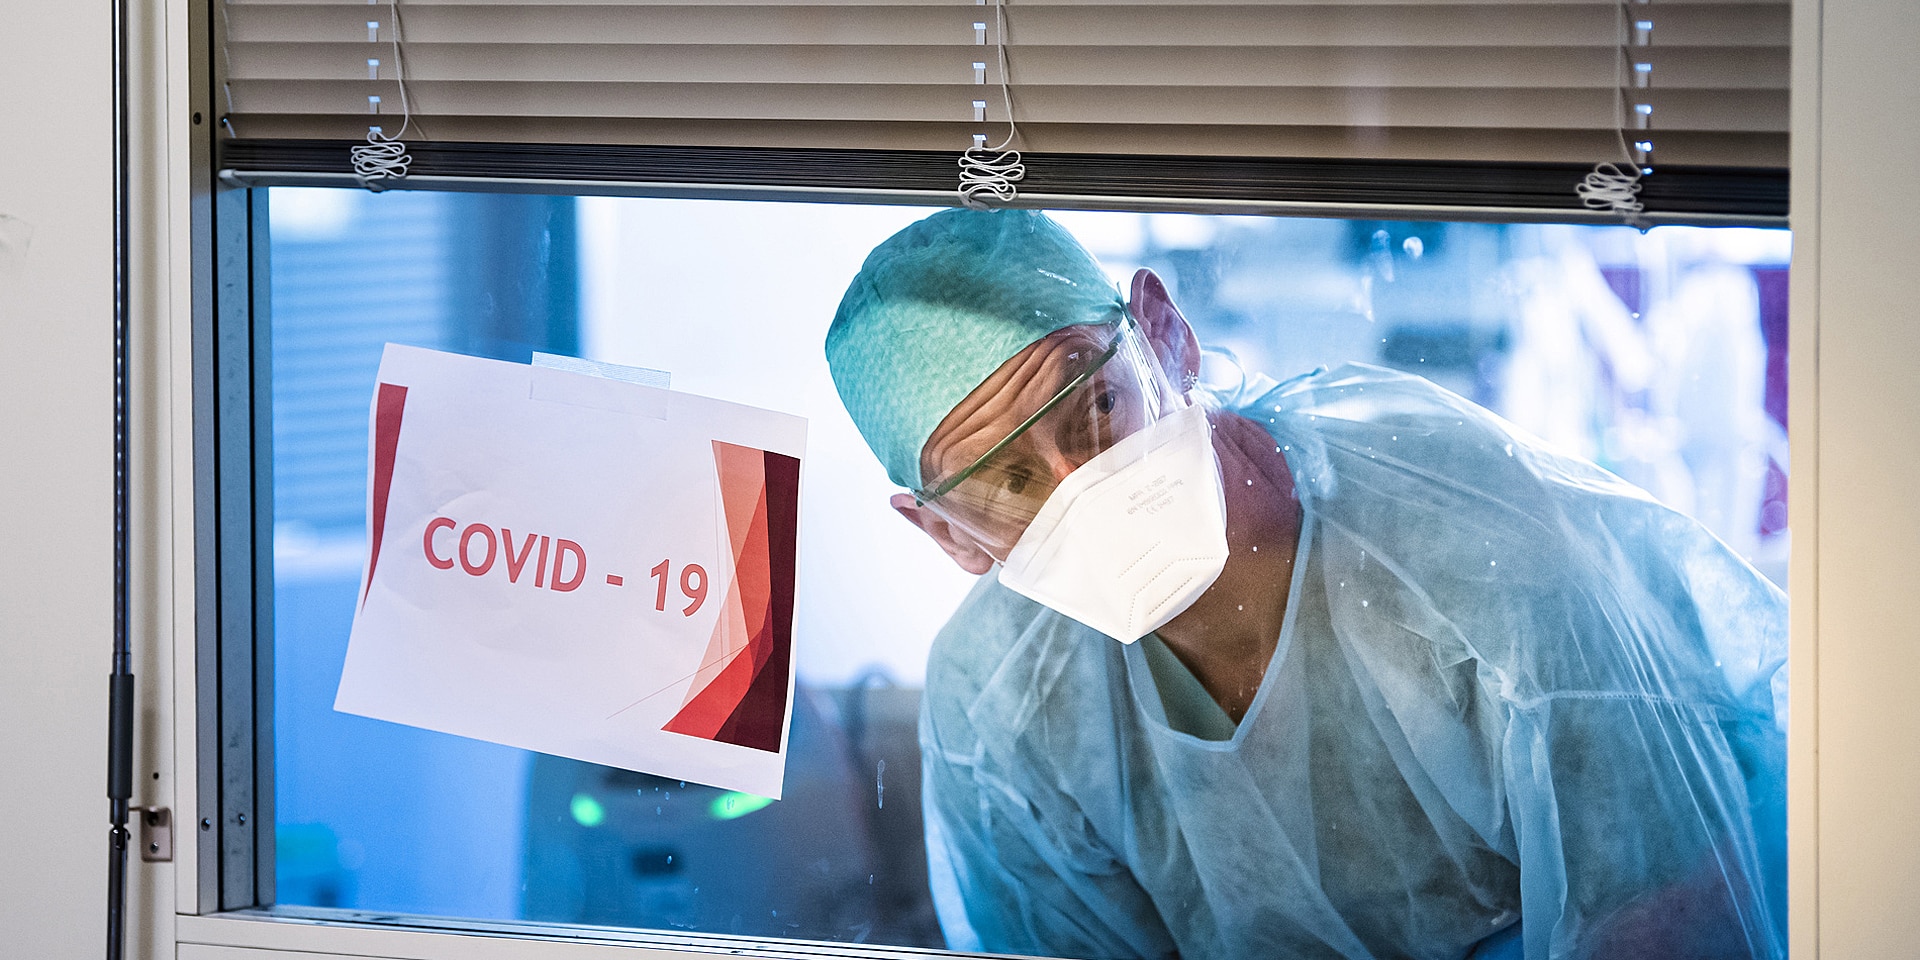 Depuis les soins intensifs, un personnel soignant regarde à travers une fenêtre sur laquelle une affichette indique «Covid-19». 